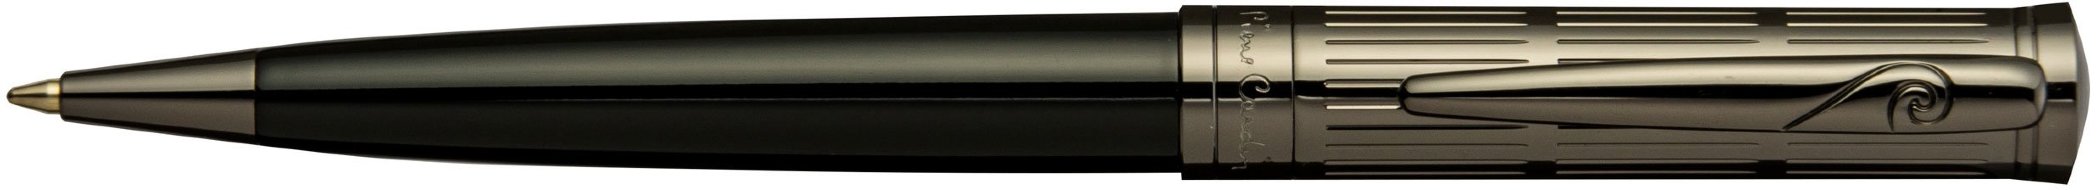 Шариковая ручка Pierre Cardin Avantage черный лак, оружейный хром